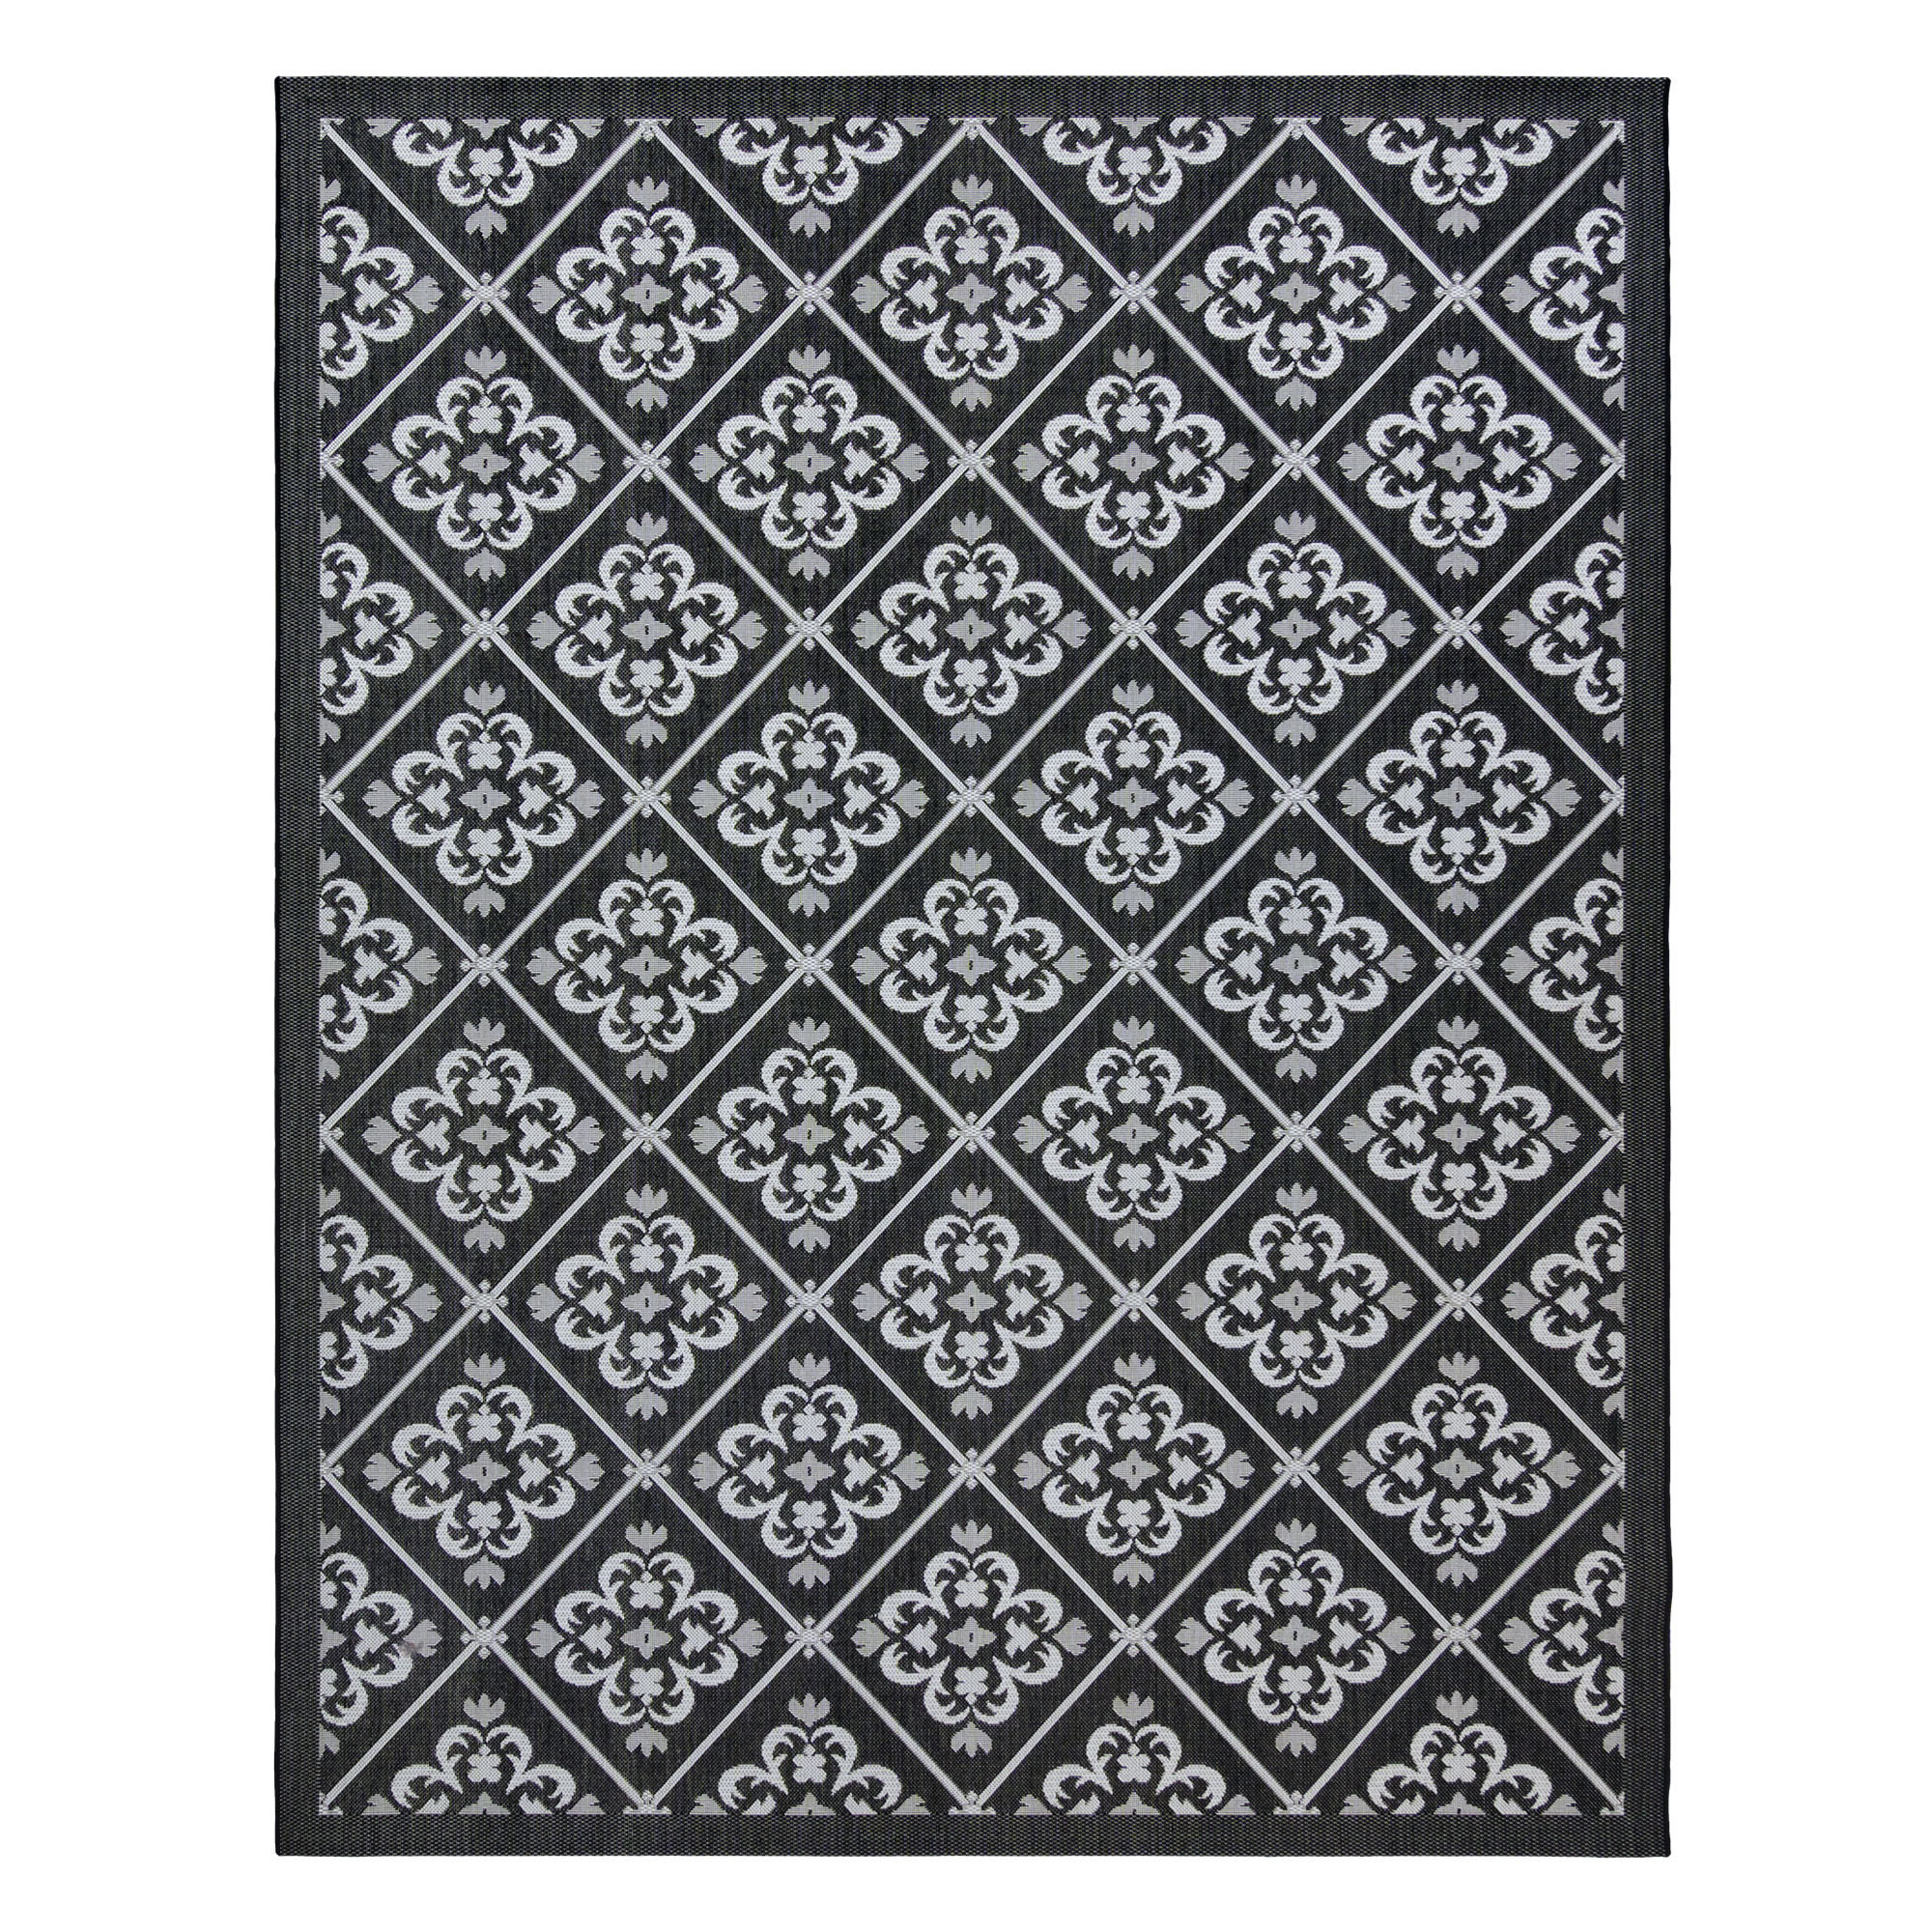 Black And White, Checkered Indoor Outdoor Doormat